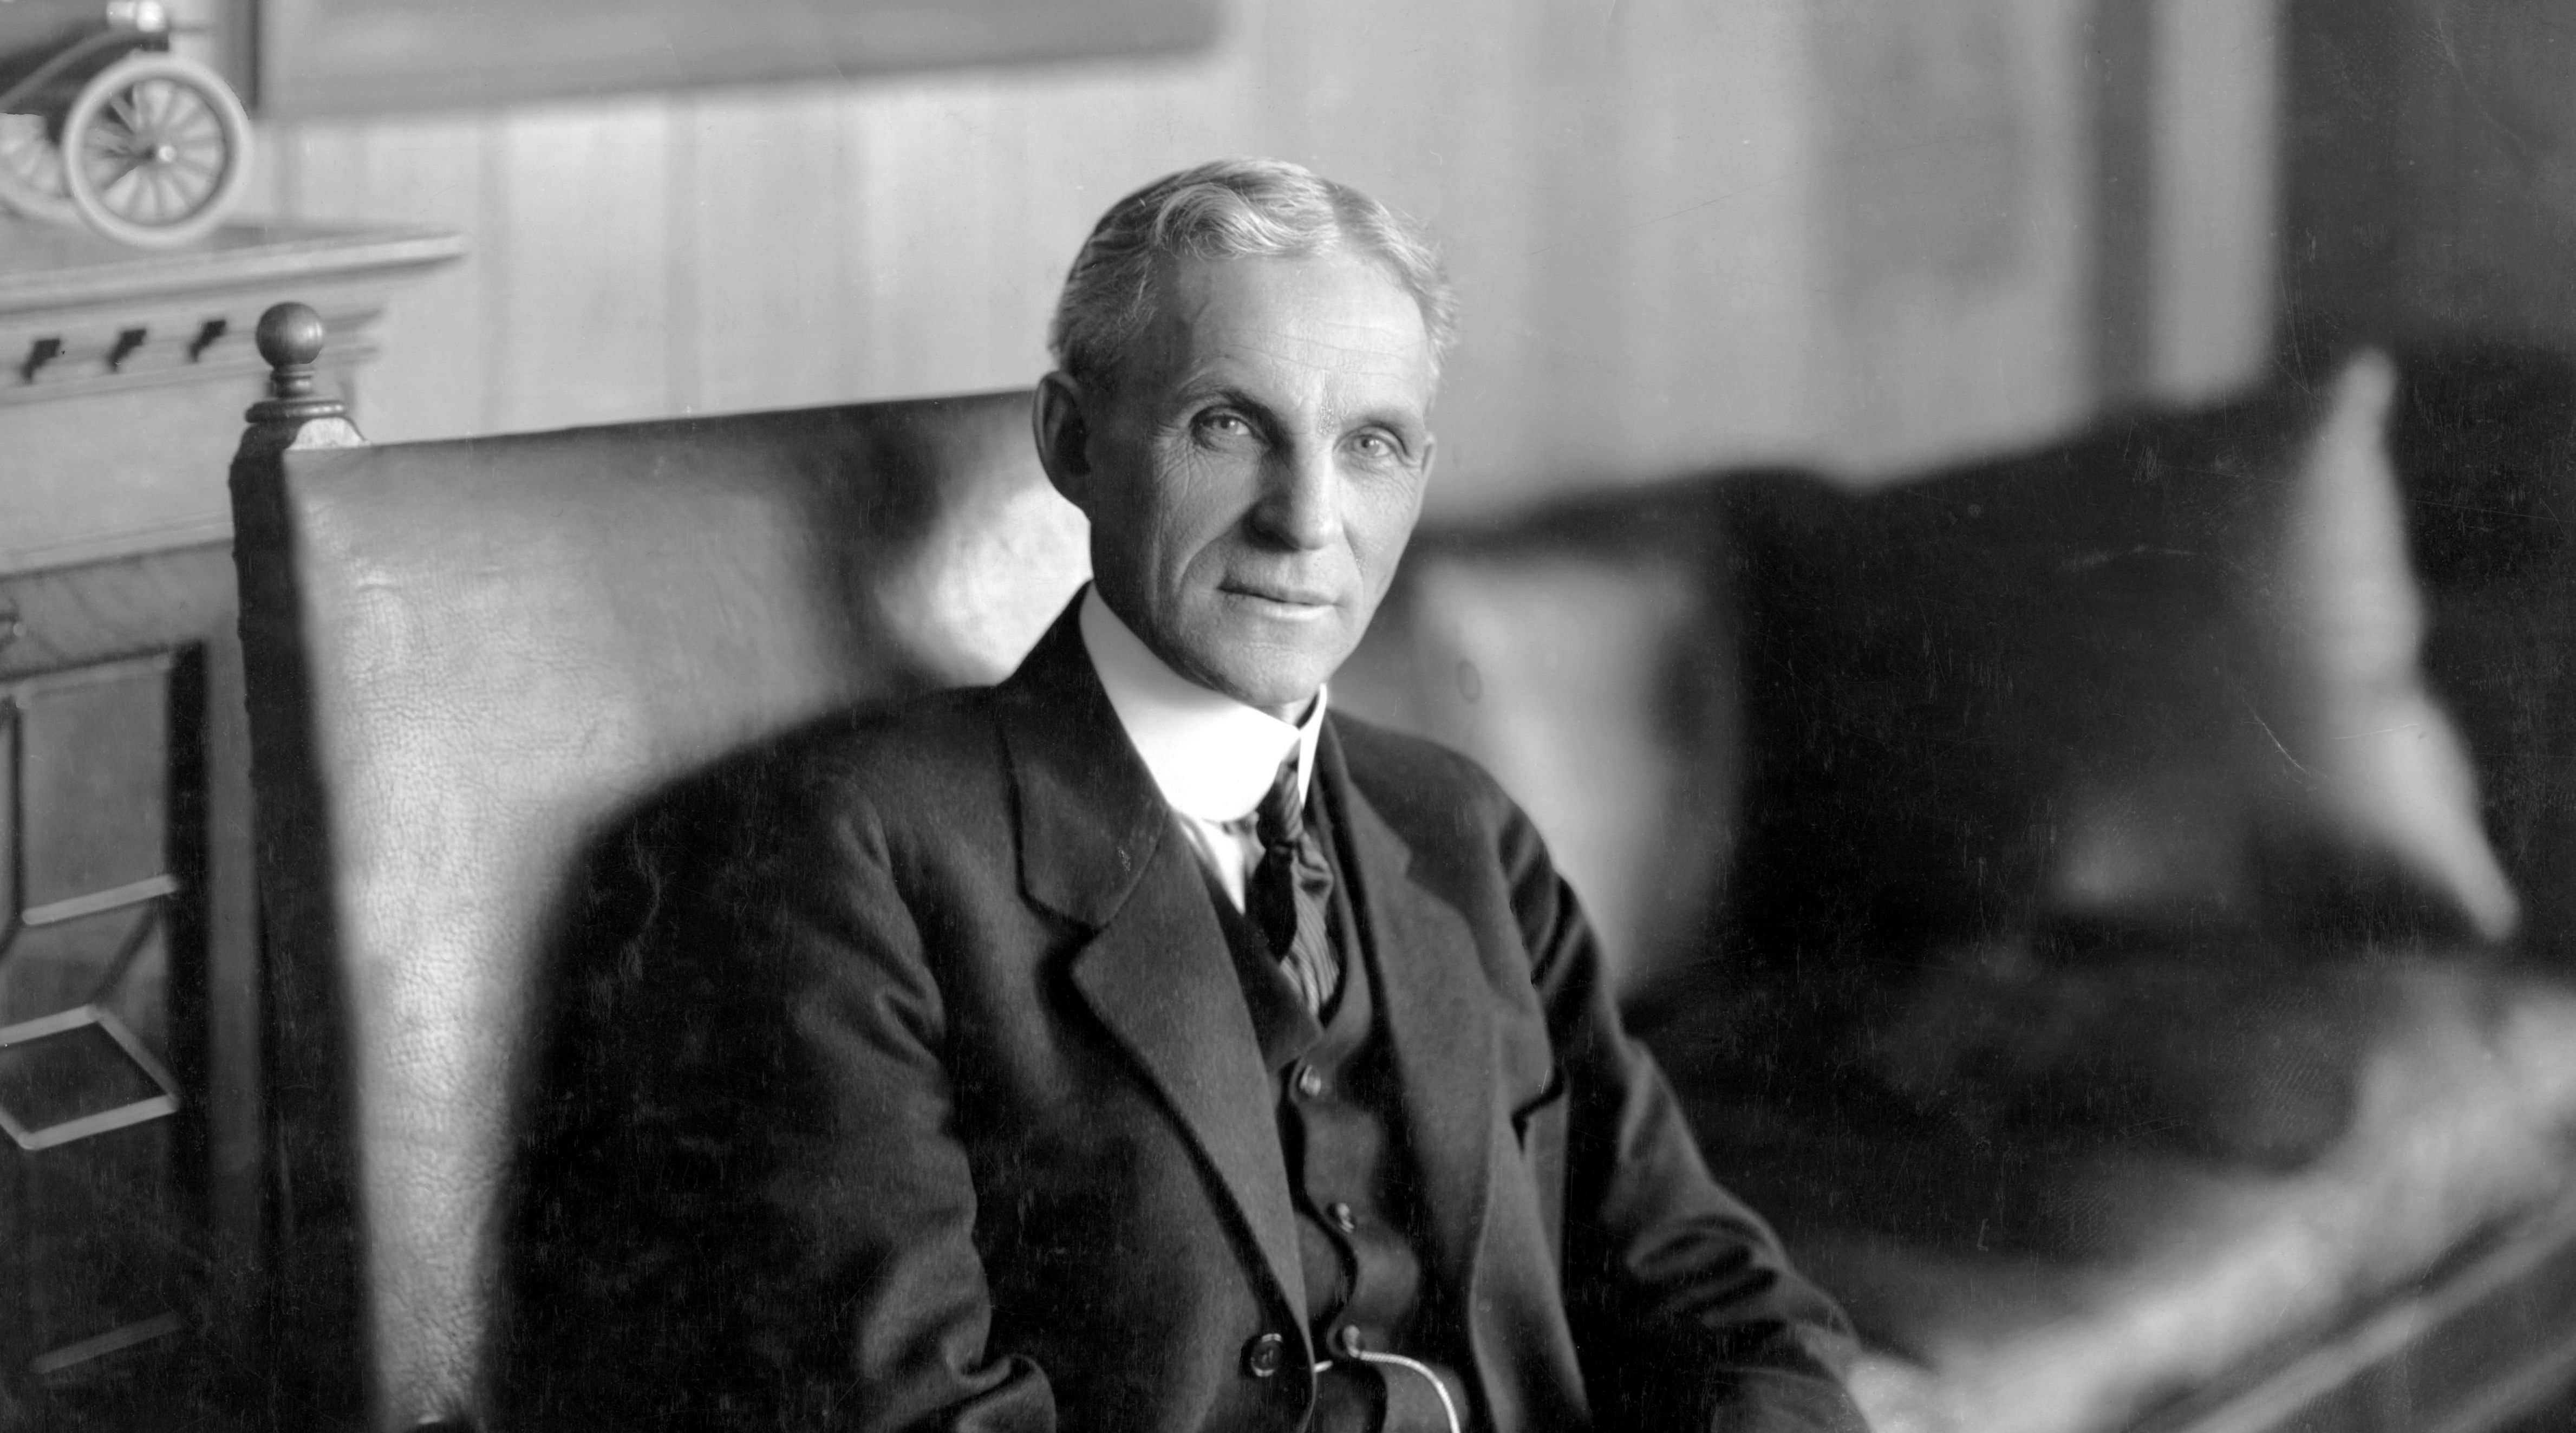 Henry Ford nafikan hak George Selden kutip royalti paten kereta dari semua pengeluar automotif Amerika